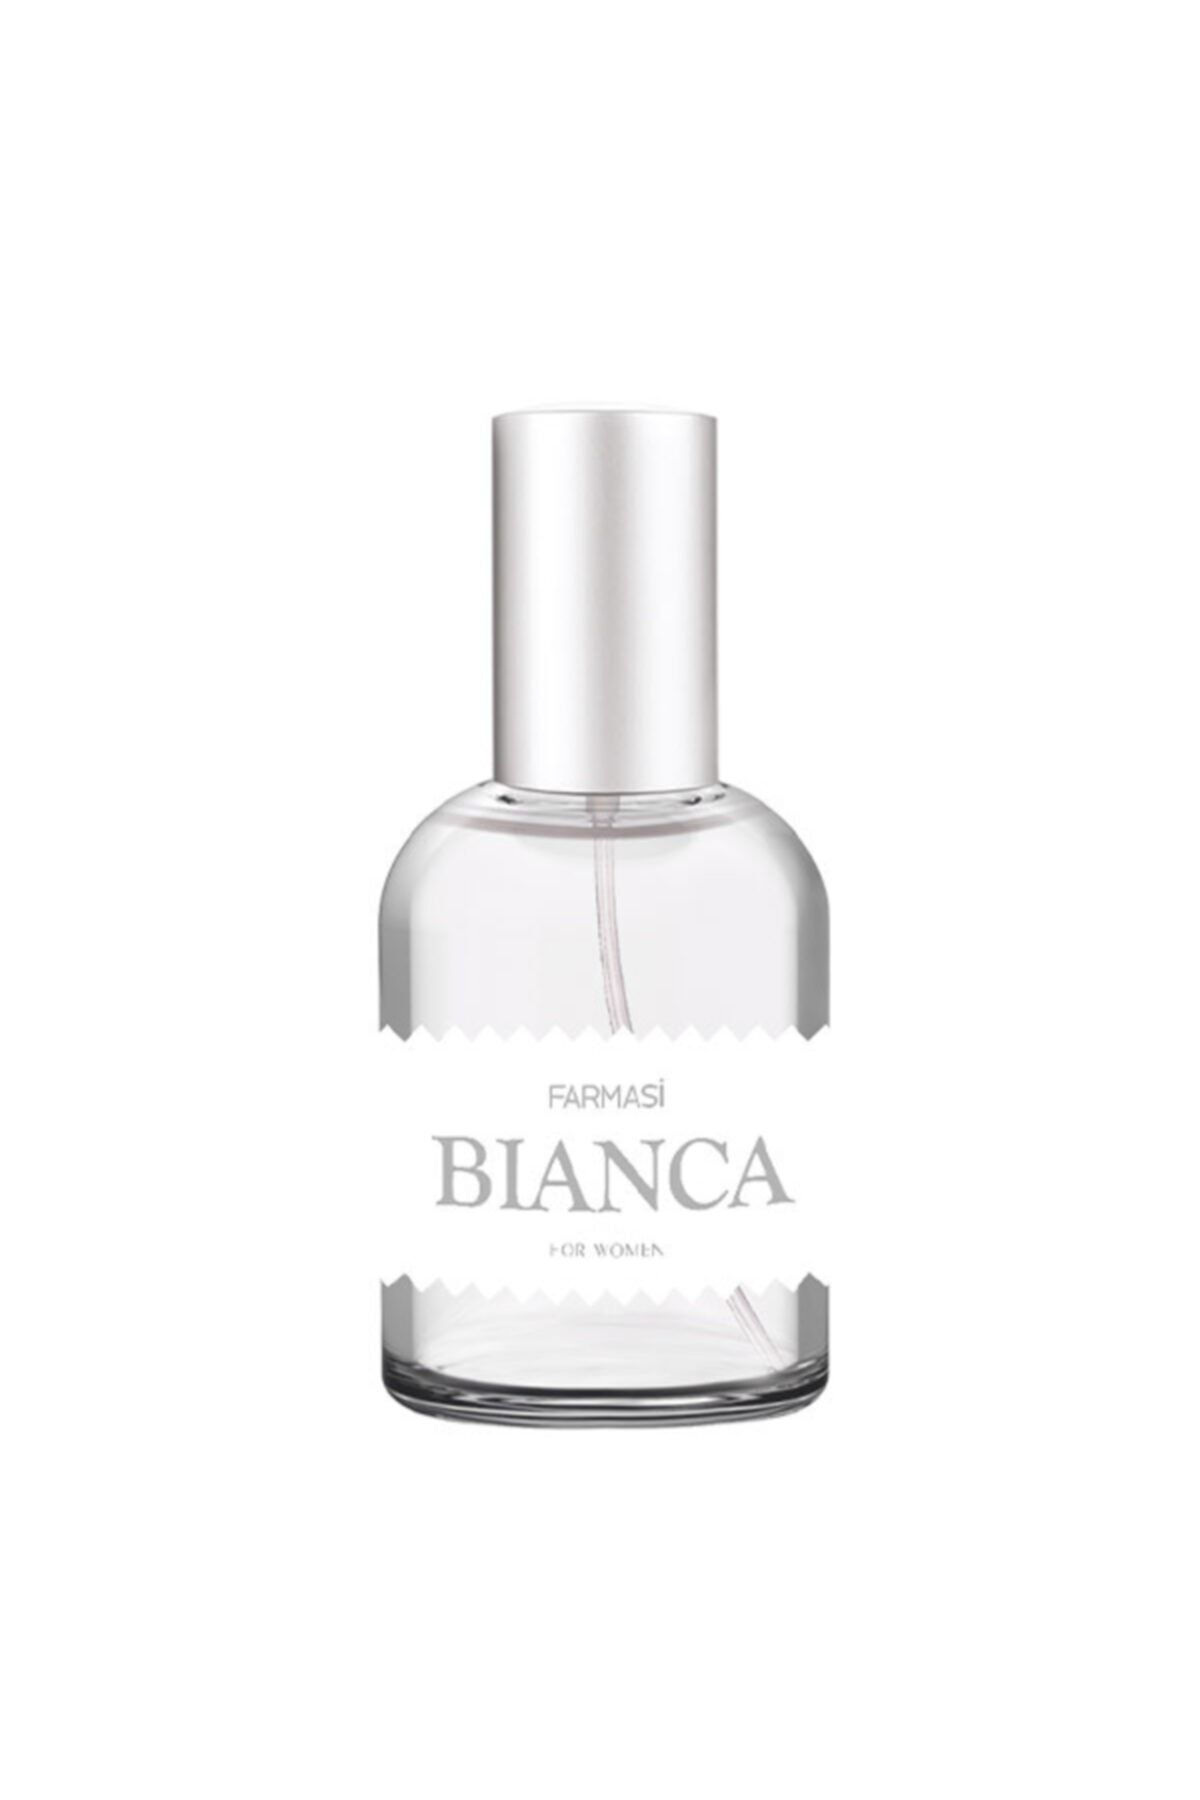 Farmasi Bianca Edp 50 ml Kadın Parfüm prfm8547